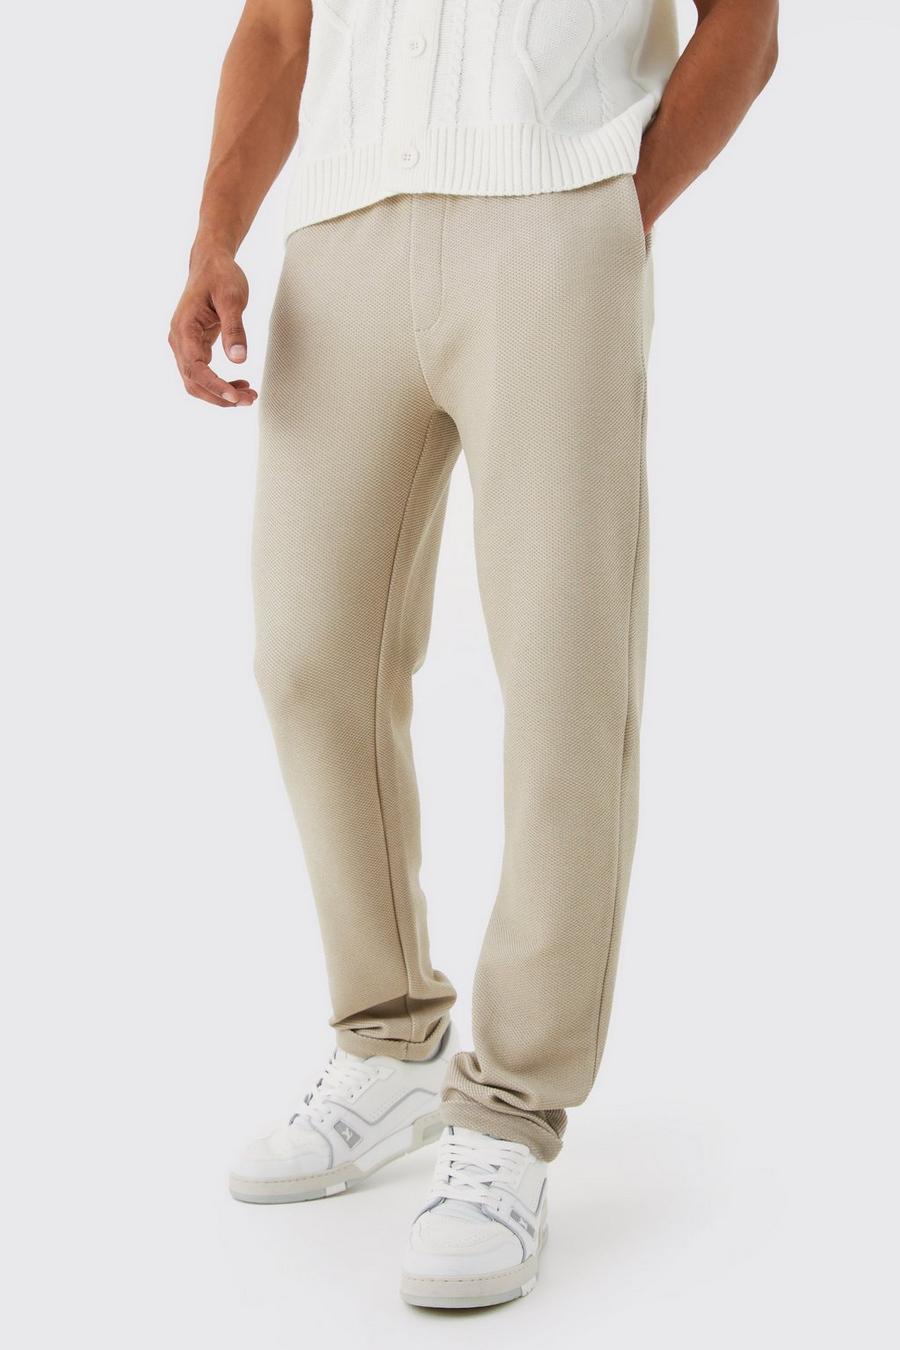 Pantalon slim habillé texturé, Taupe beige